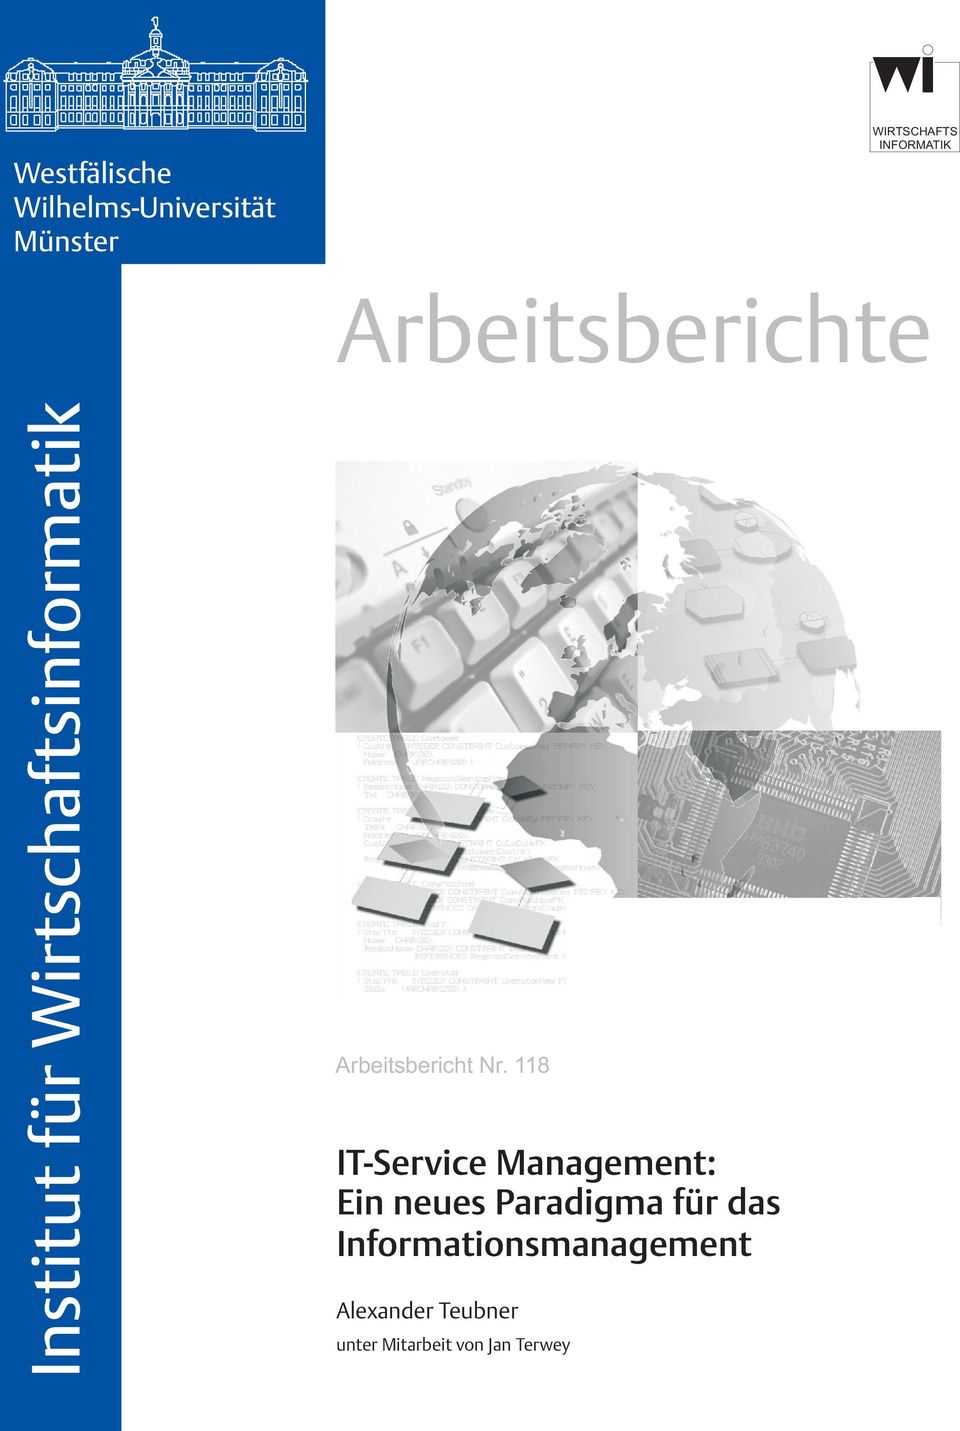 Nr. 118 IT-Service Management: Ein neues Paradigma für das